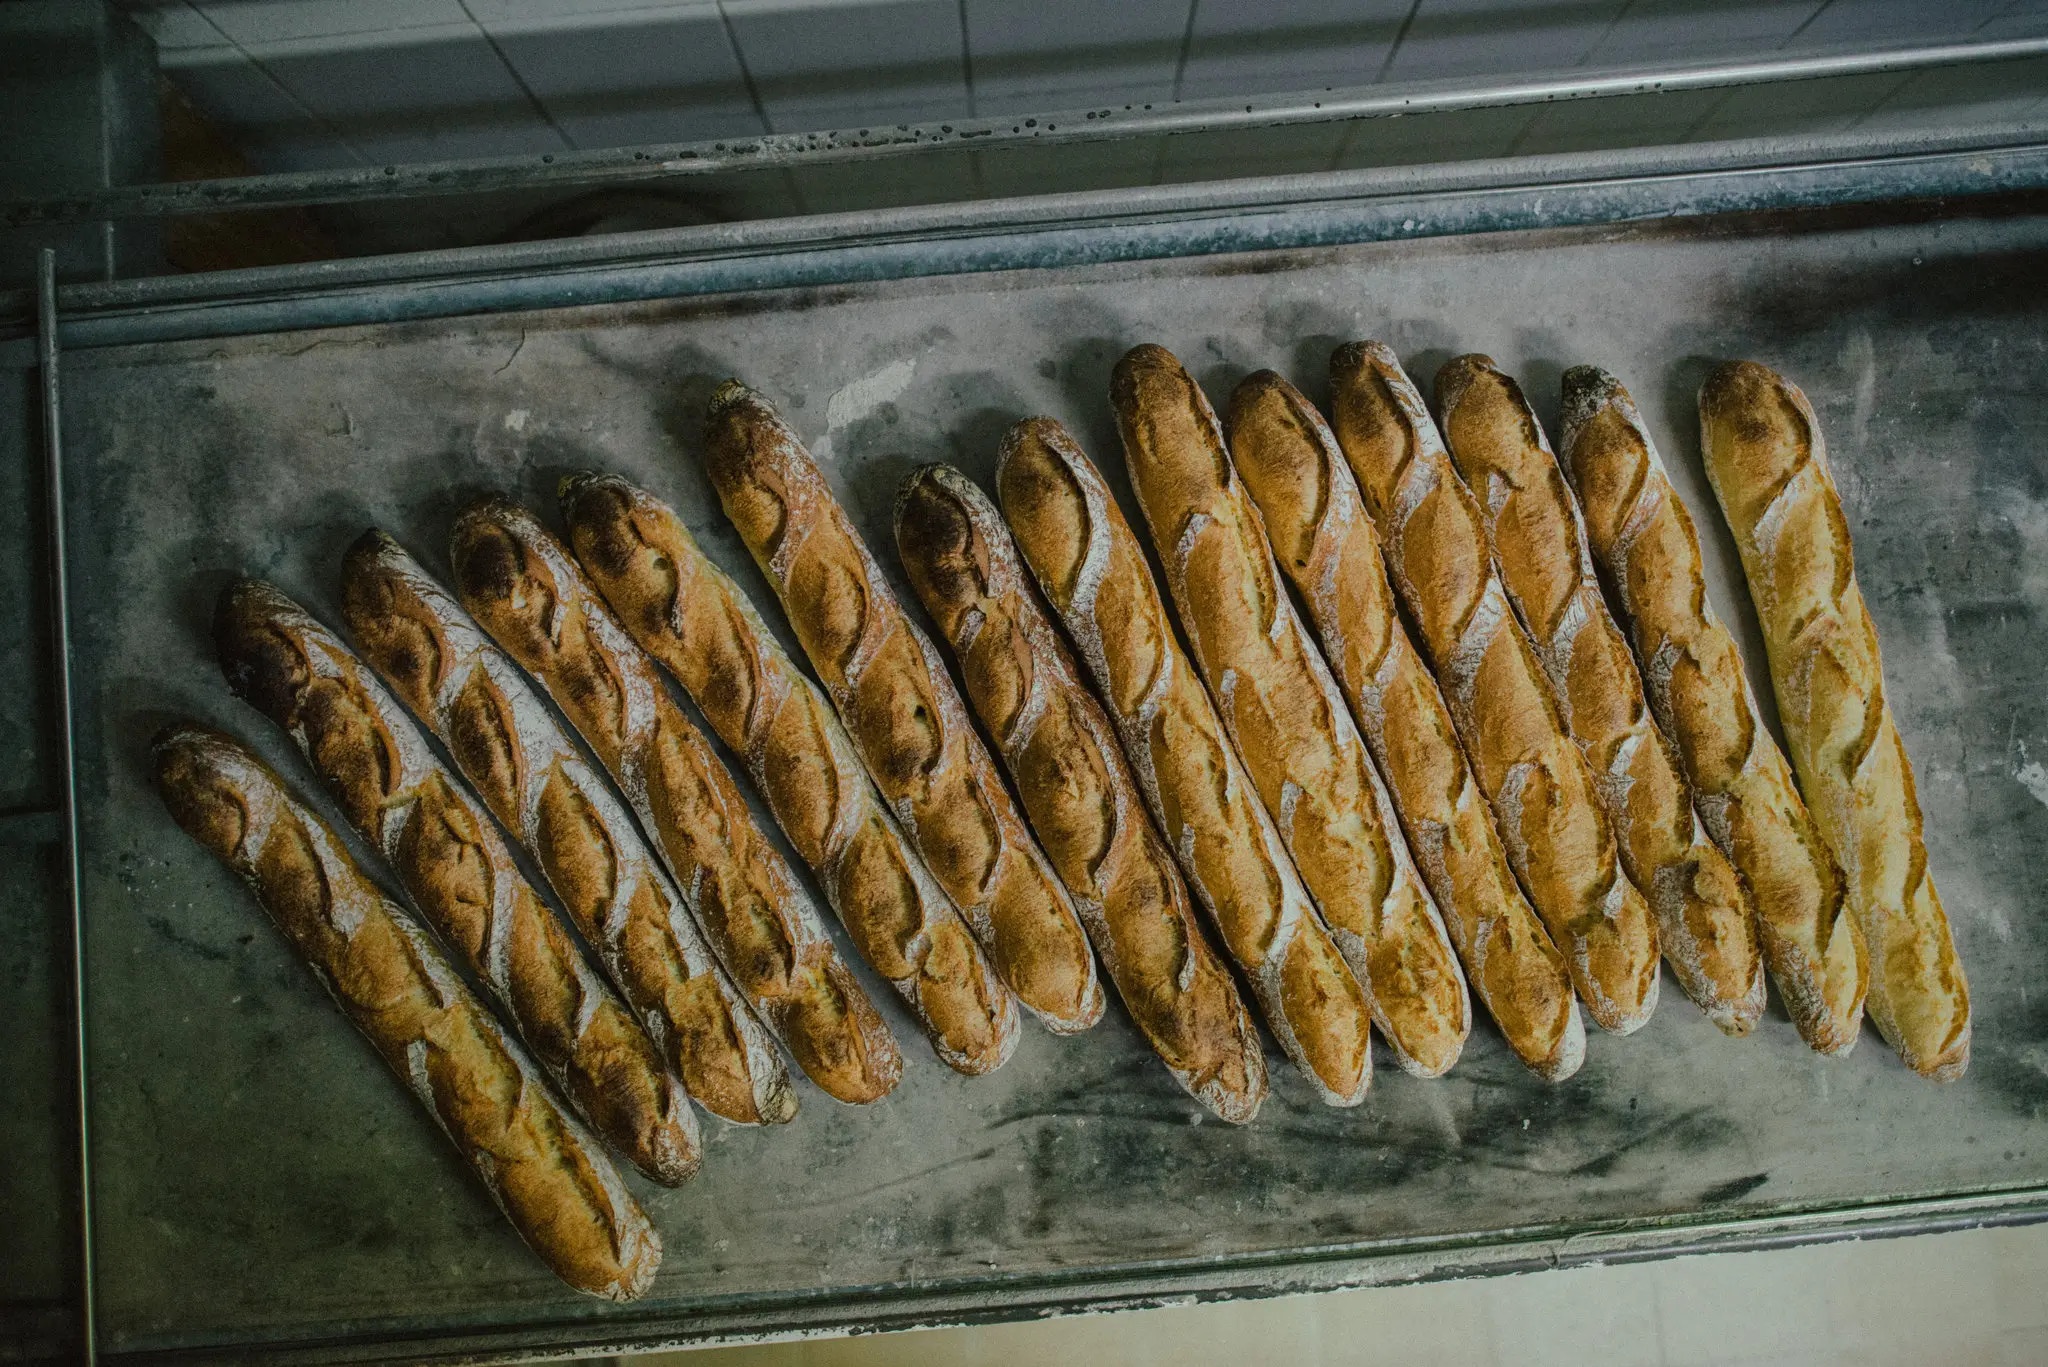 Mùa đông khắc nghiệt bóp nghẹt bánh mì baguette Pháp - ảnh 3